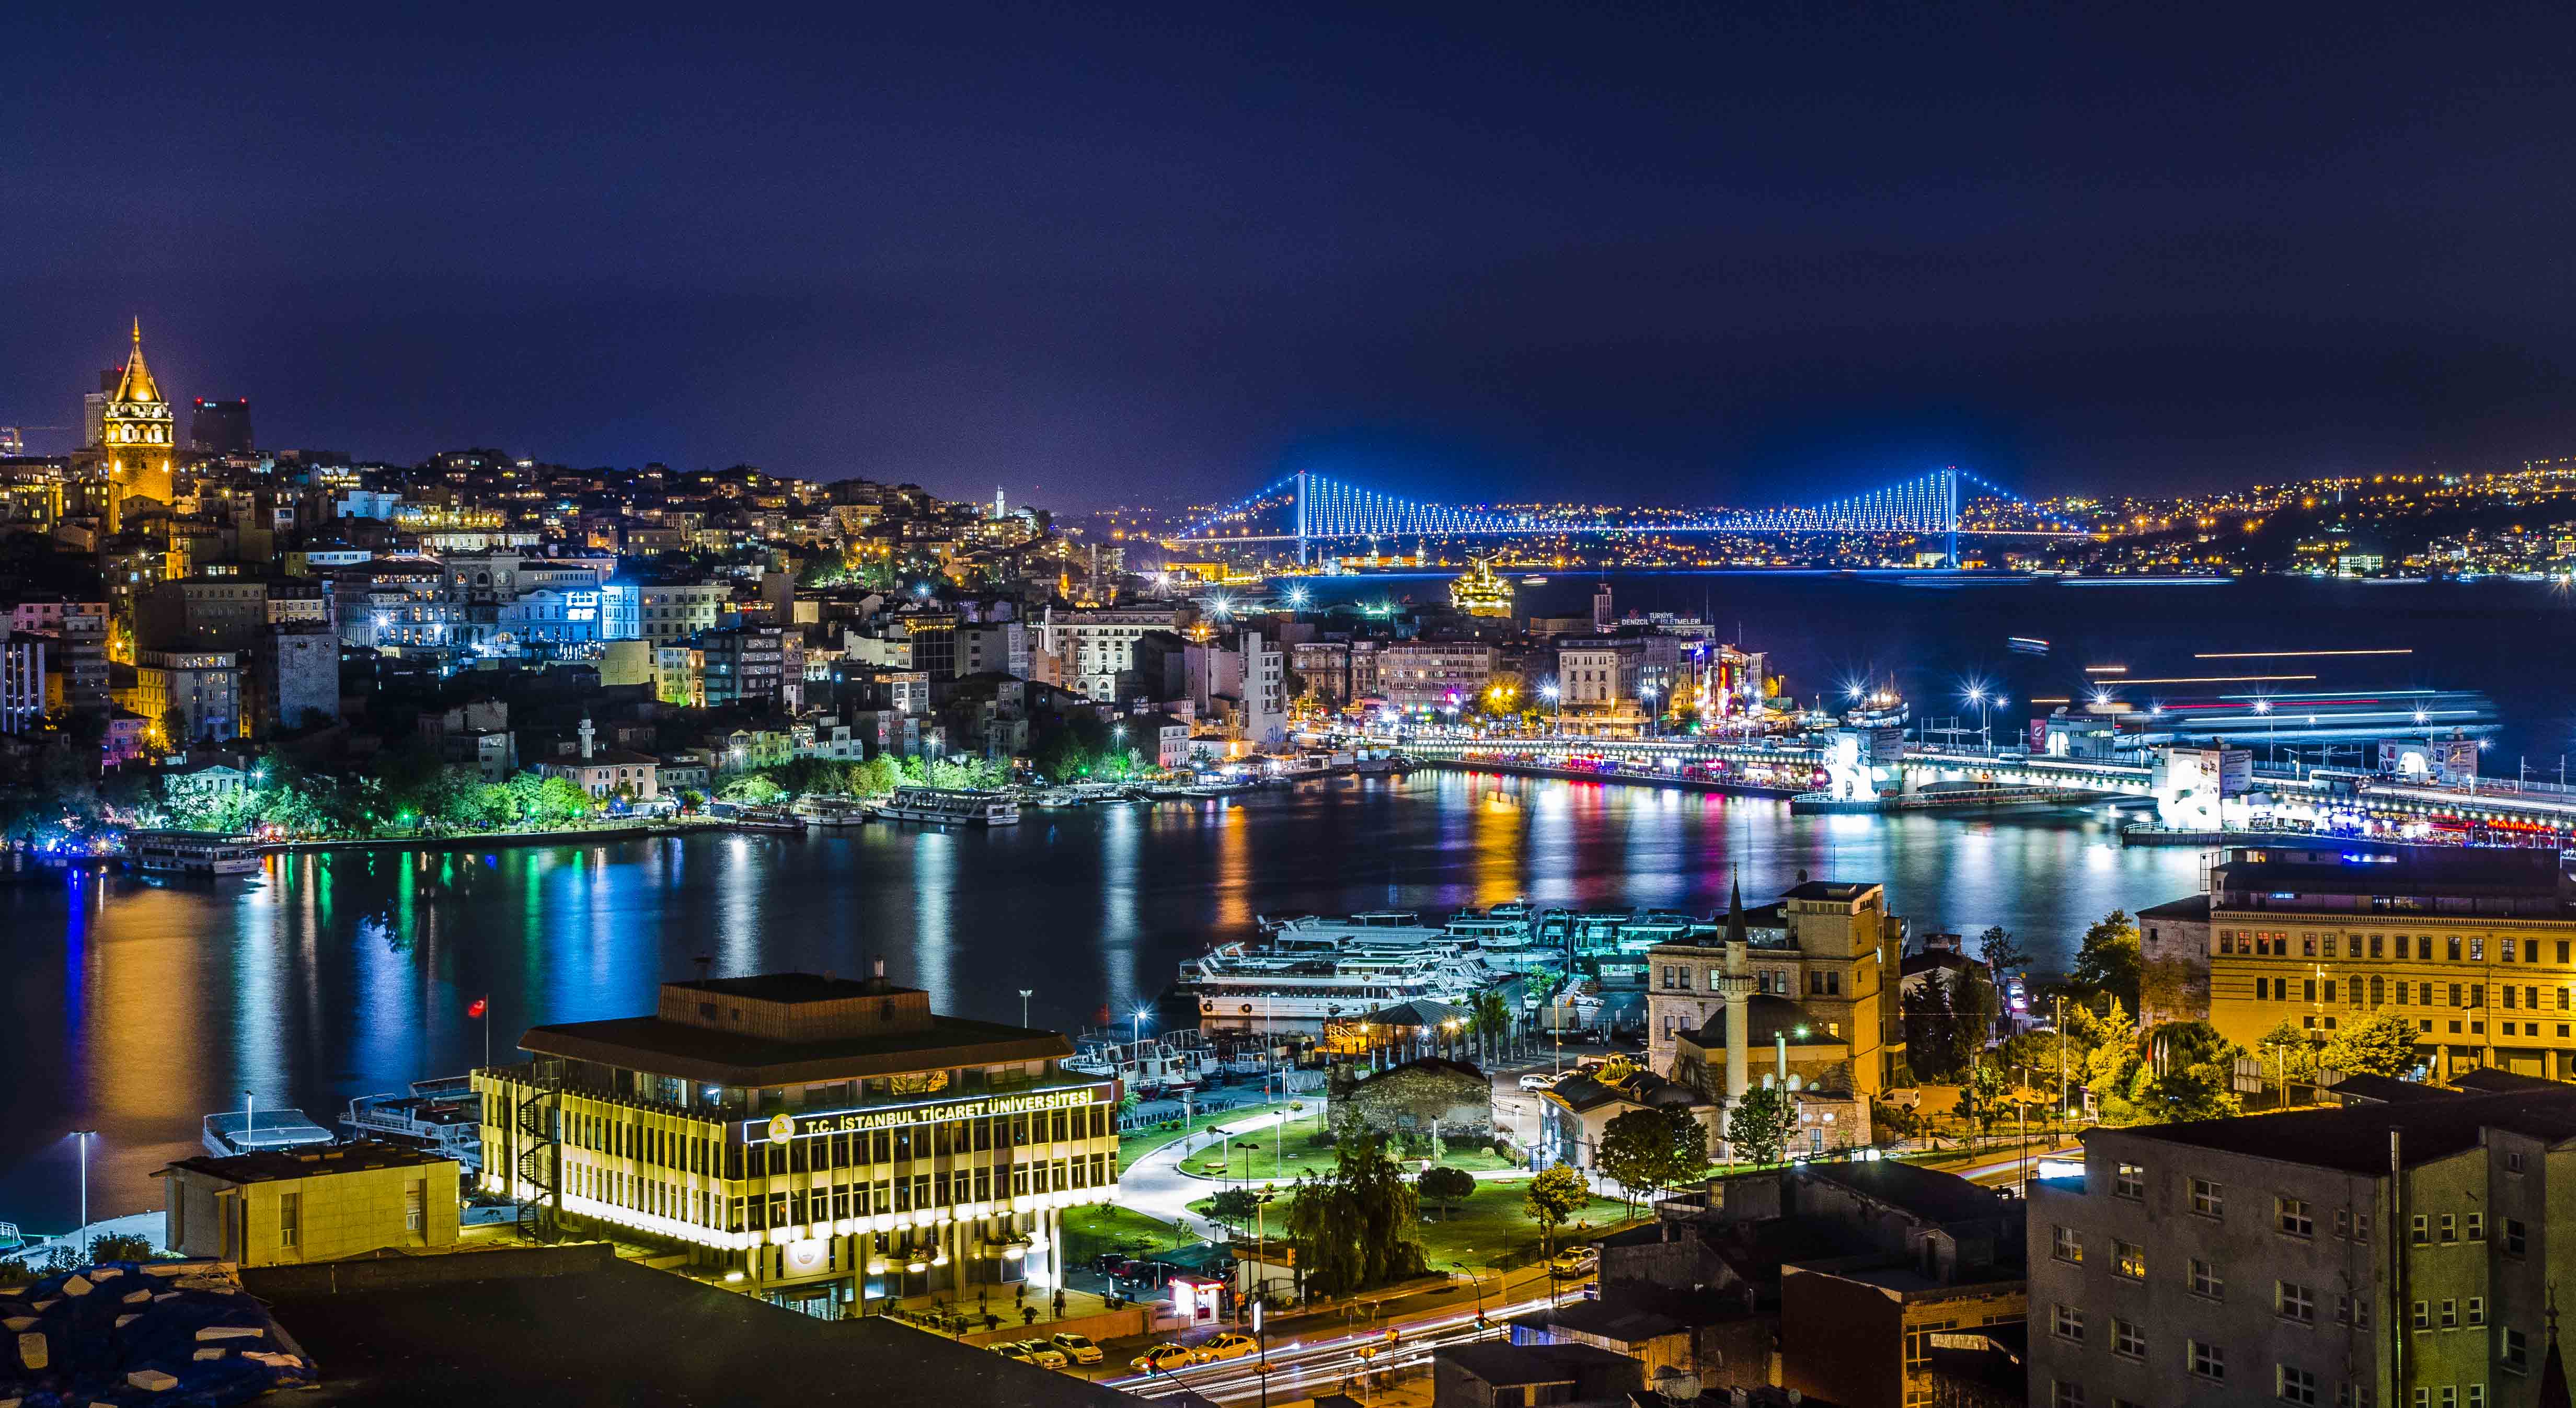 Istanbul by night, from Suleymaniye